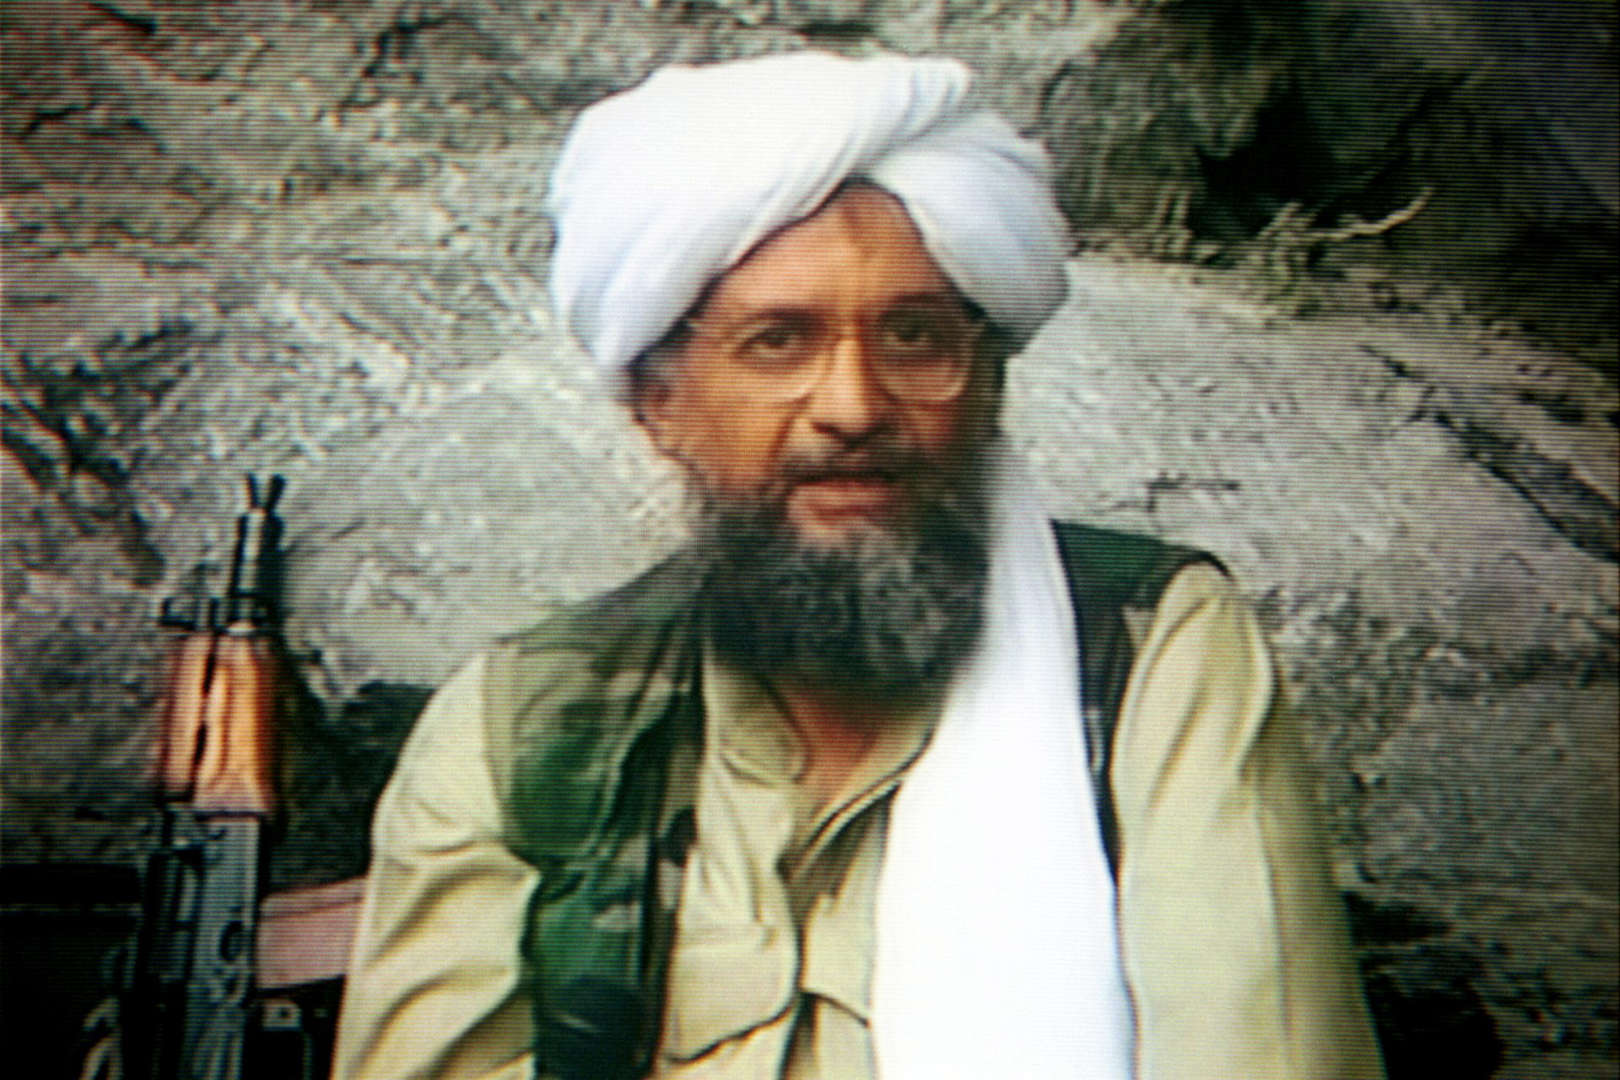 Diapositiva 1 di 25: Era già scampato ad un attacco il 13 gennaio 2016, Ayman Al-Zawahiri, l'ex numero 2 di Osama Bin Laden. In quell'occasione, secondo quanto riportato dalla BBC, aveva ammonito il presidente George W Bush: né lui "né tutte le potenze della Terra" avrebbero potuto anticipare la sua morte "di un secondo", aveva detto il leader di Al Qaeda. Sedici anni dopo, però, tra il 30 e il 31 luglio 2022, la sua sorte è cambiata.